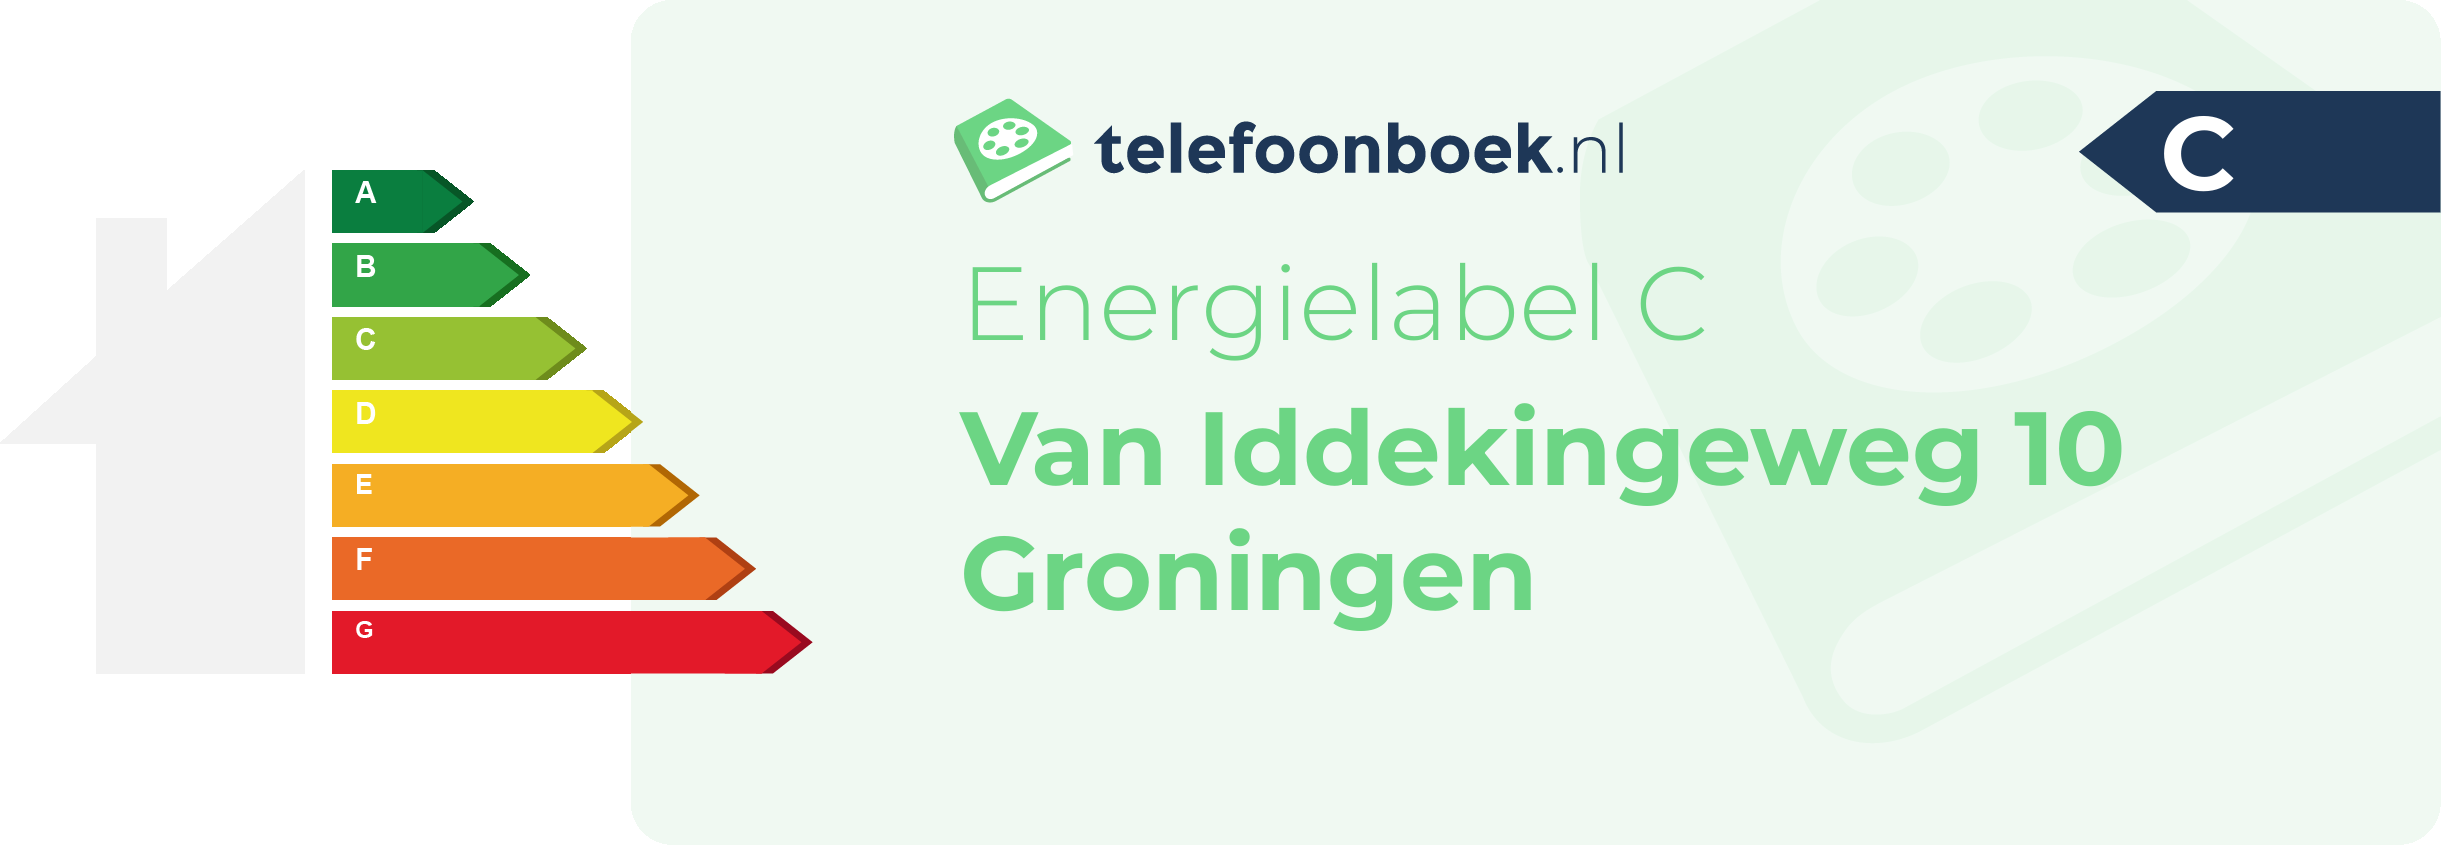 Energielabel Van Iddekingeweg 10 Groningen